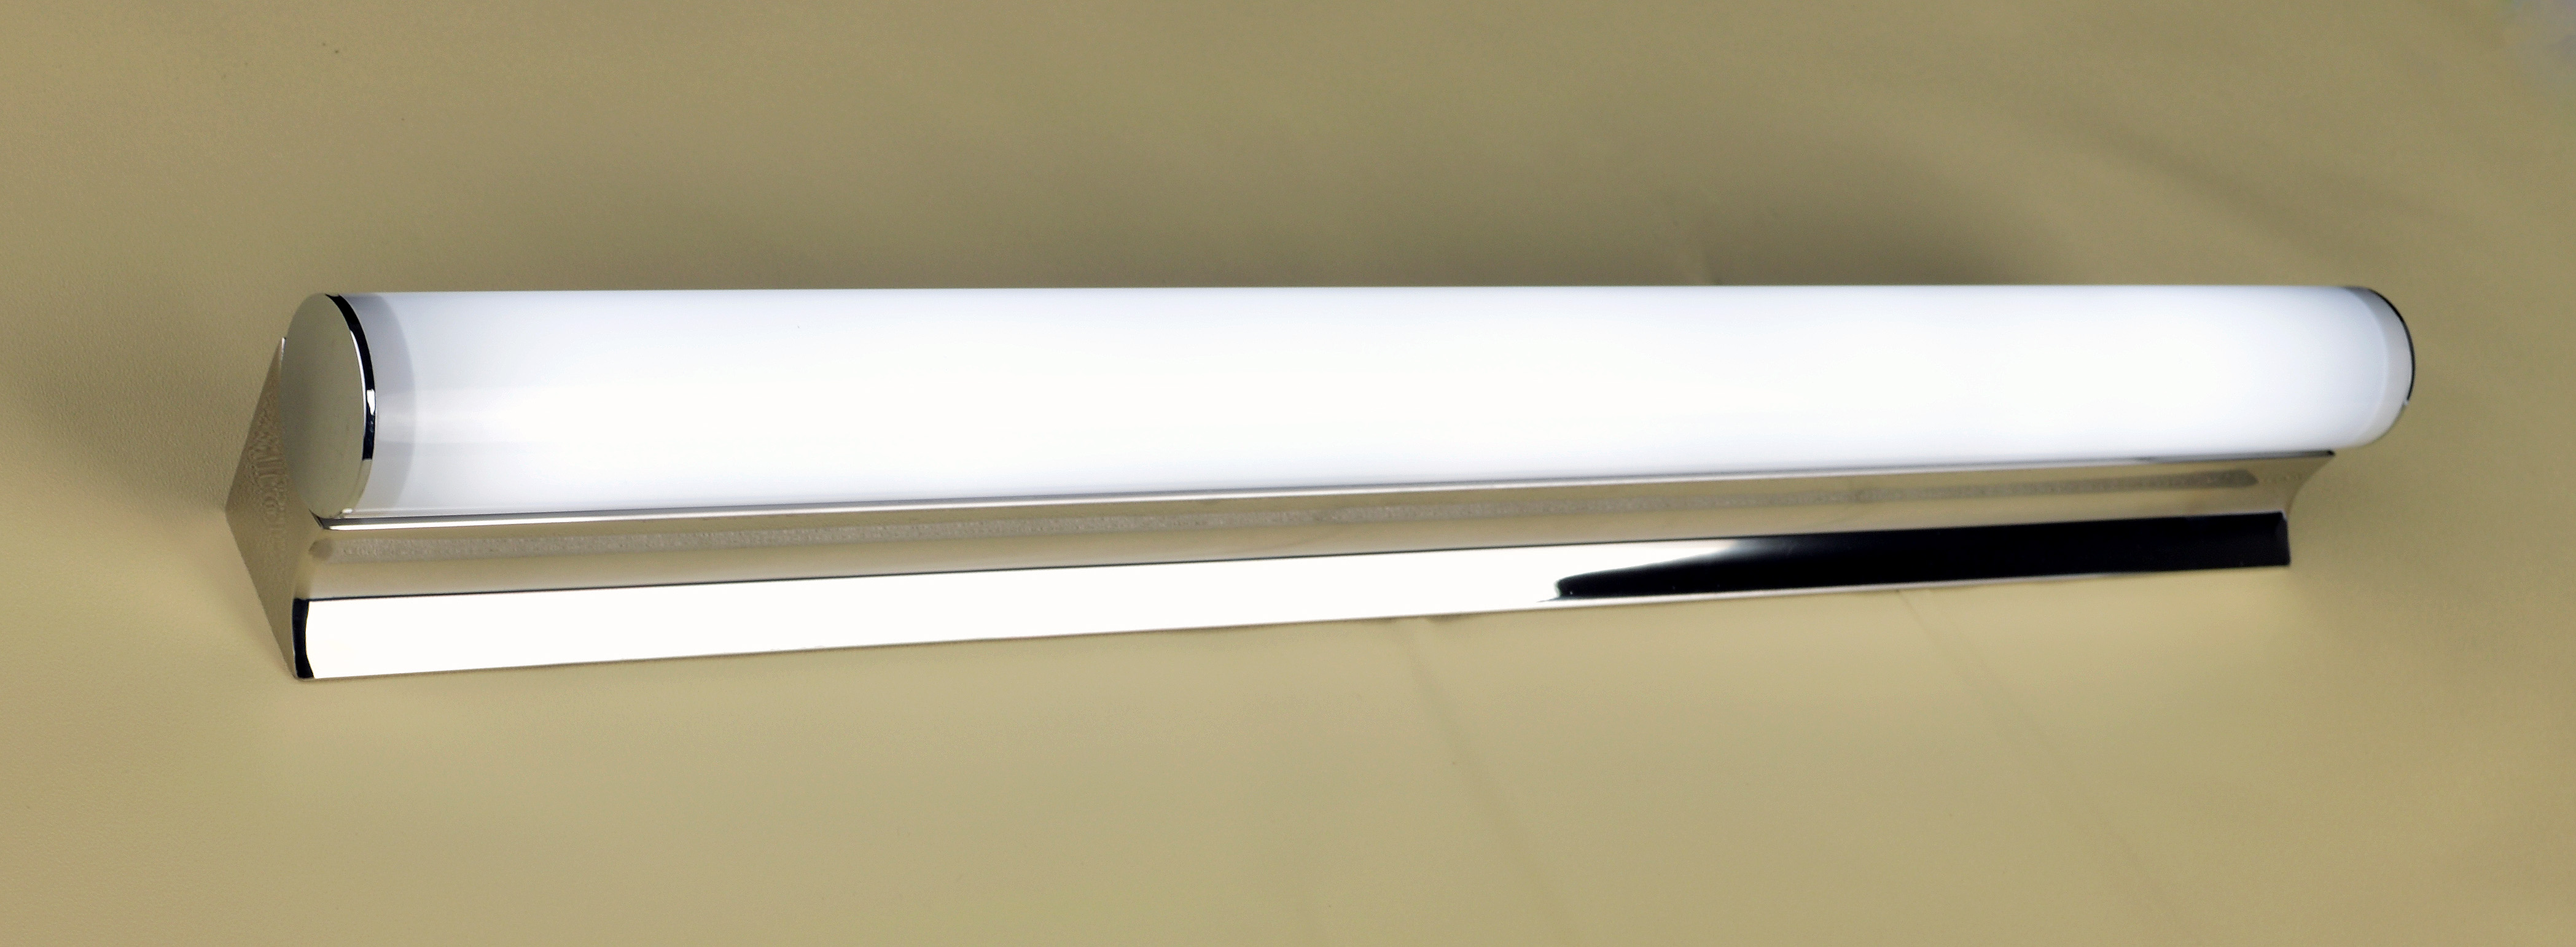 lámpara iluminada del espejo del espejo LED de la aleación de aluminio (MB2020/S)